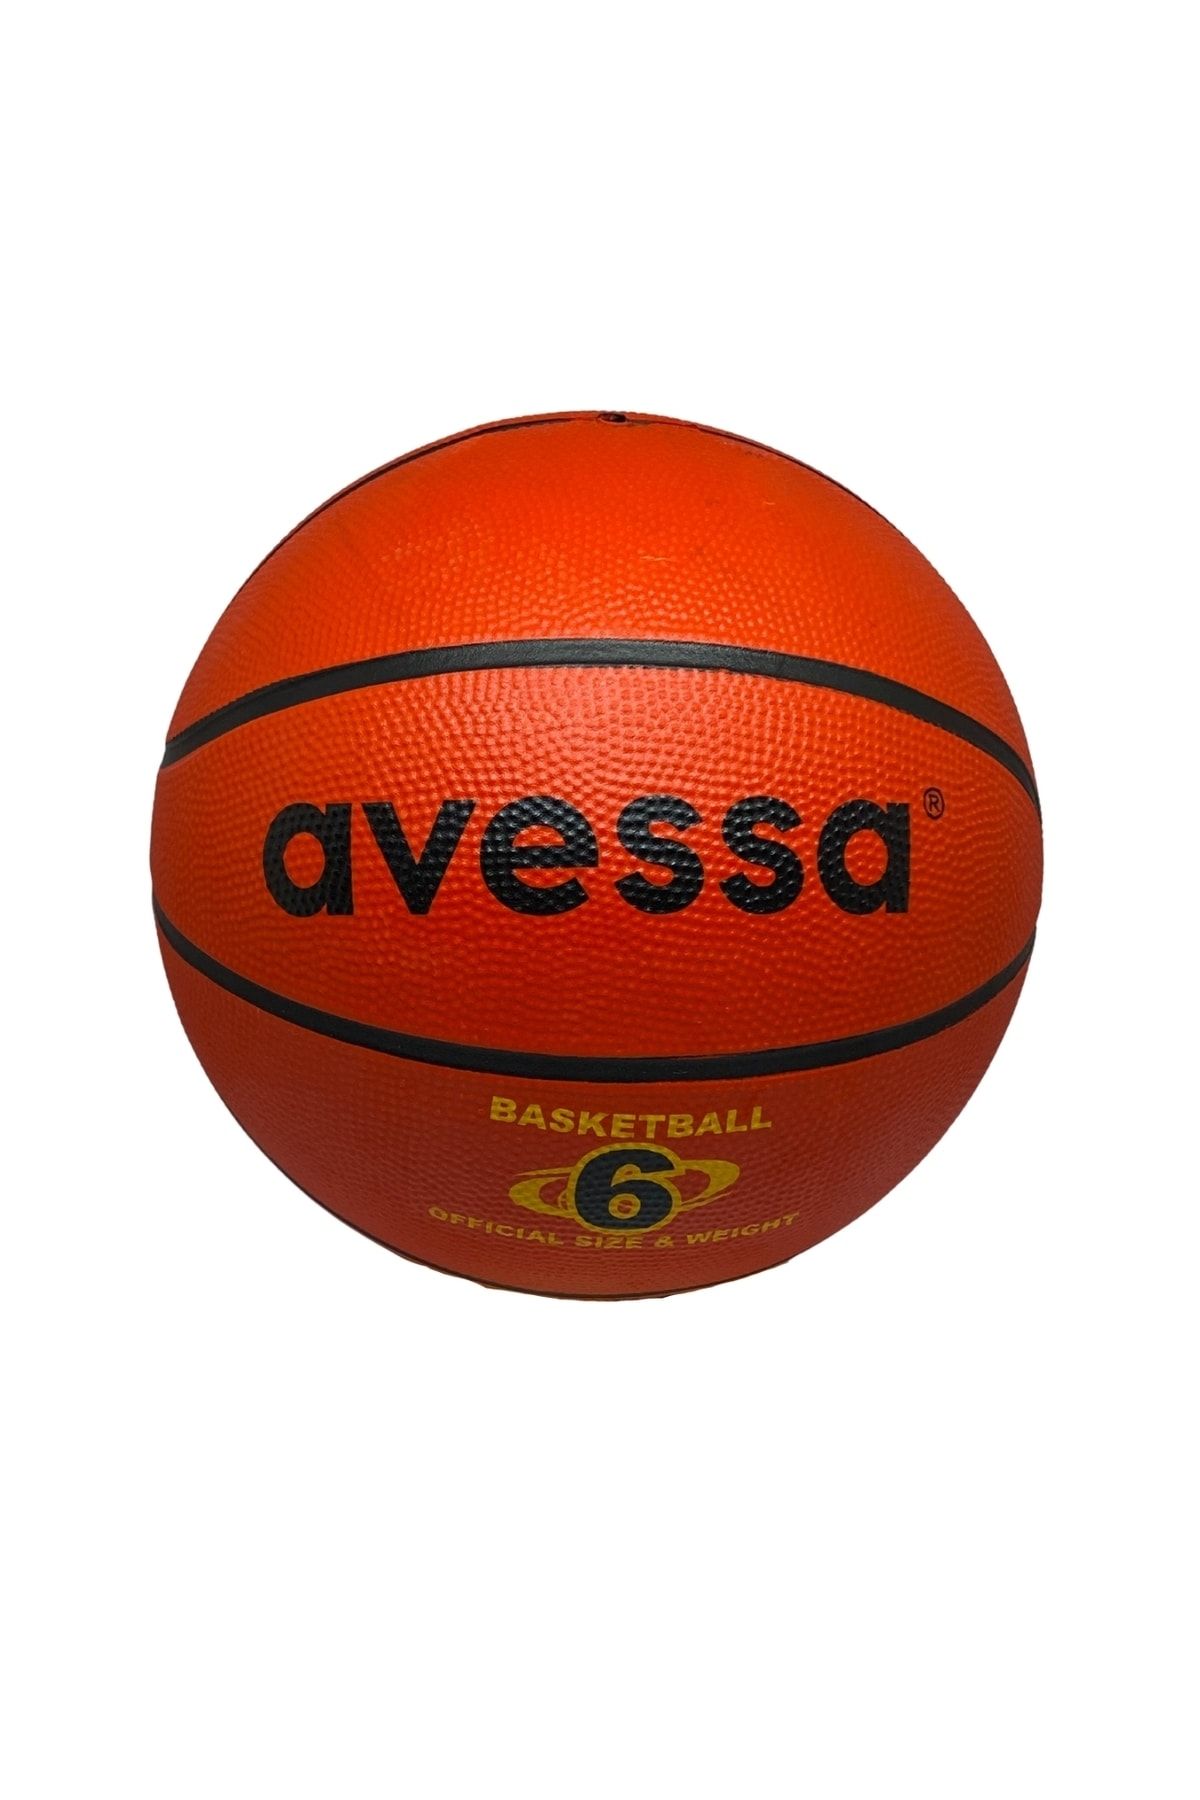 Avessa Kauçuk Basketbol Topu 6 Numara